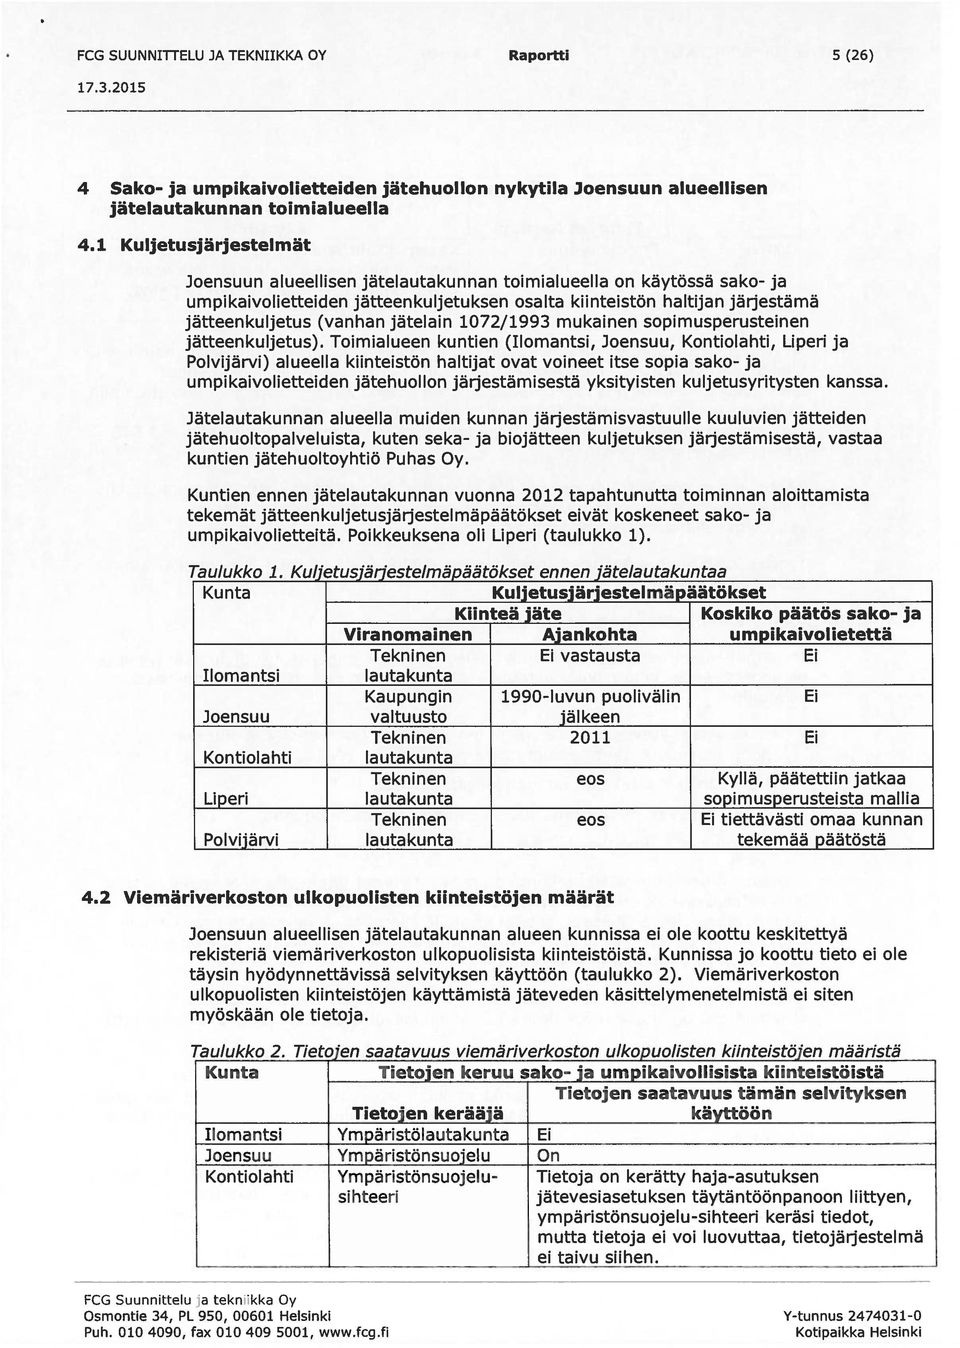 jätelain 1072/1993 mukainen sopimusperusteinen jätteenkuljetus).